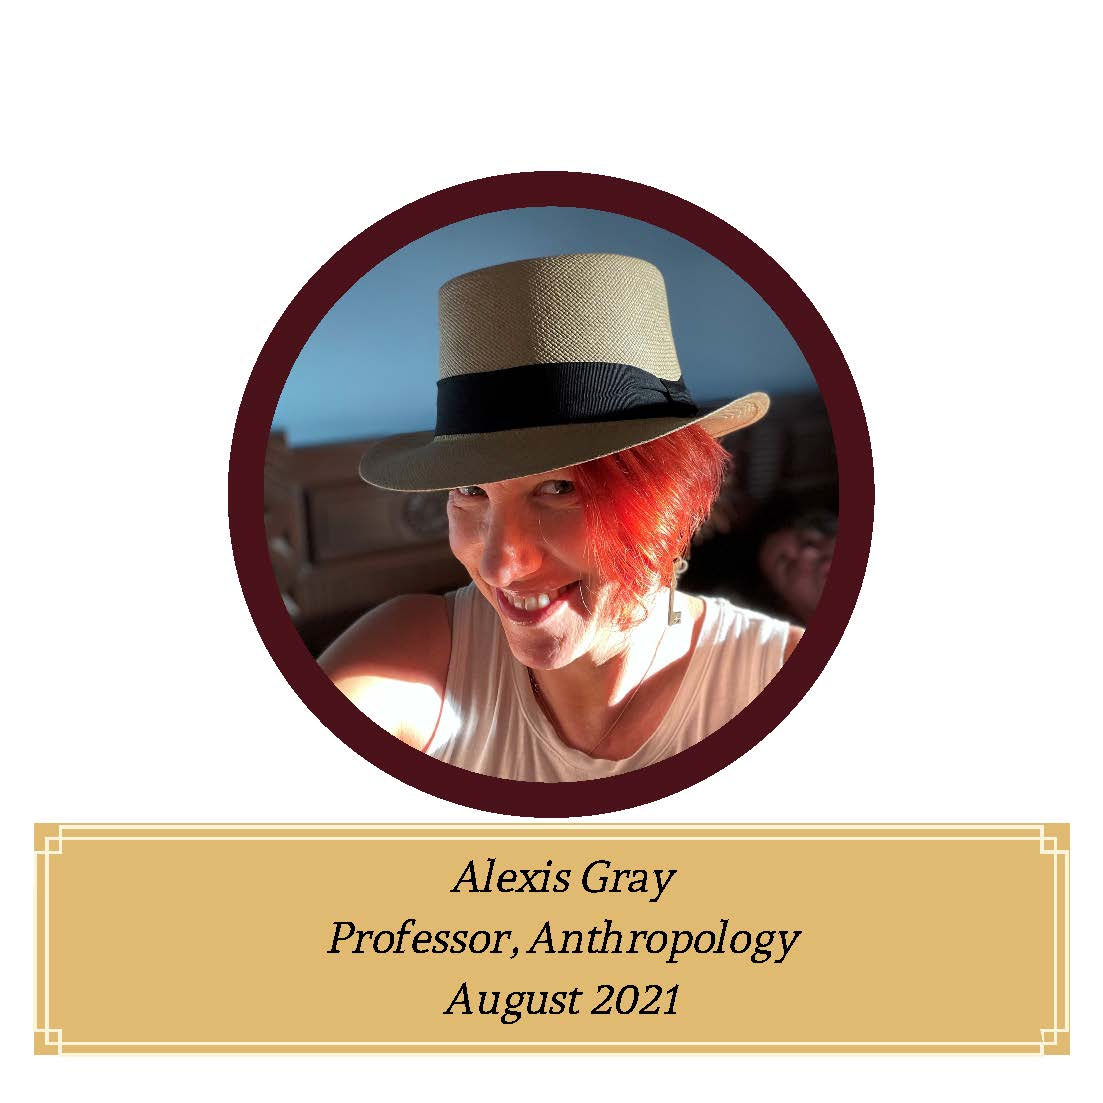 Dr. Alexis Gray